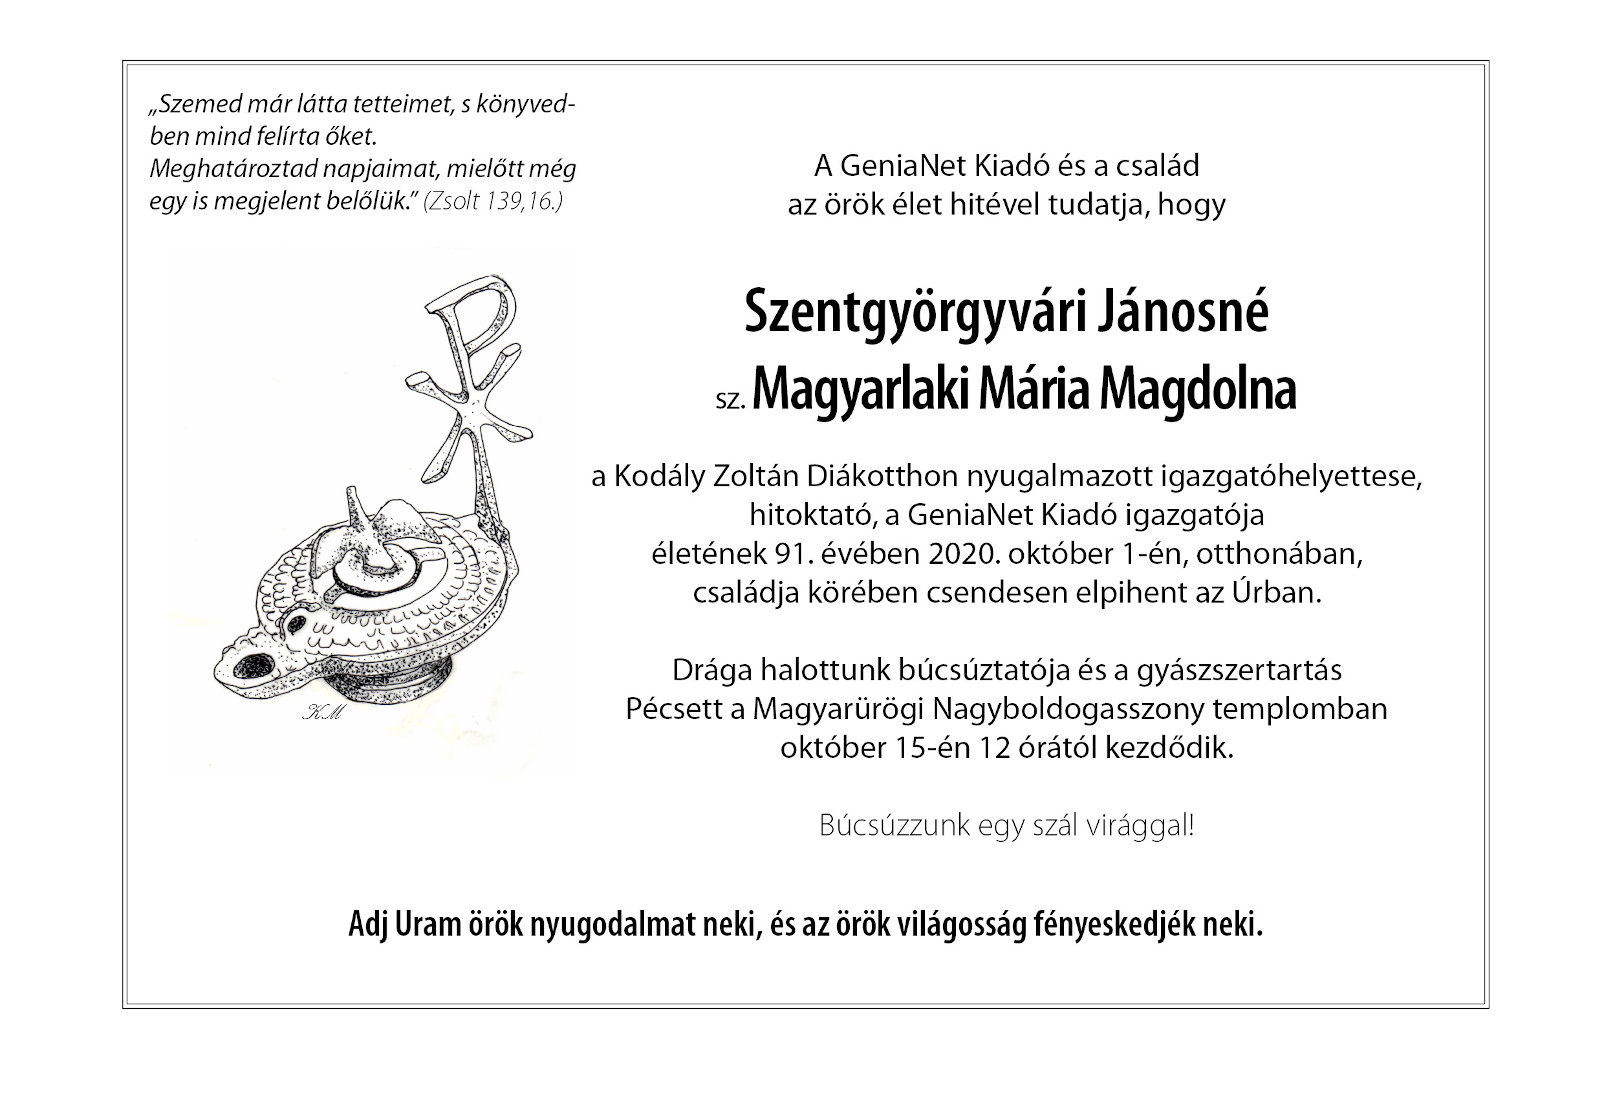 Szentgyörgyiváriné Magyarlaki Mária Magdolna gyaszjelentése